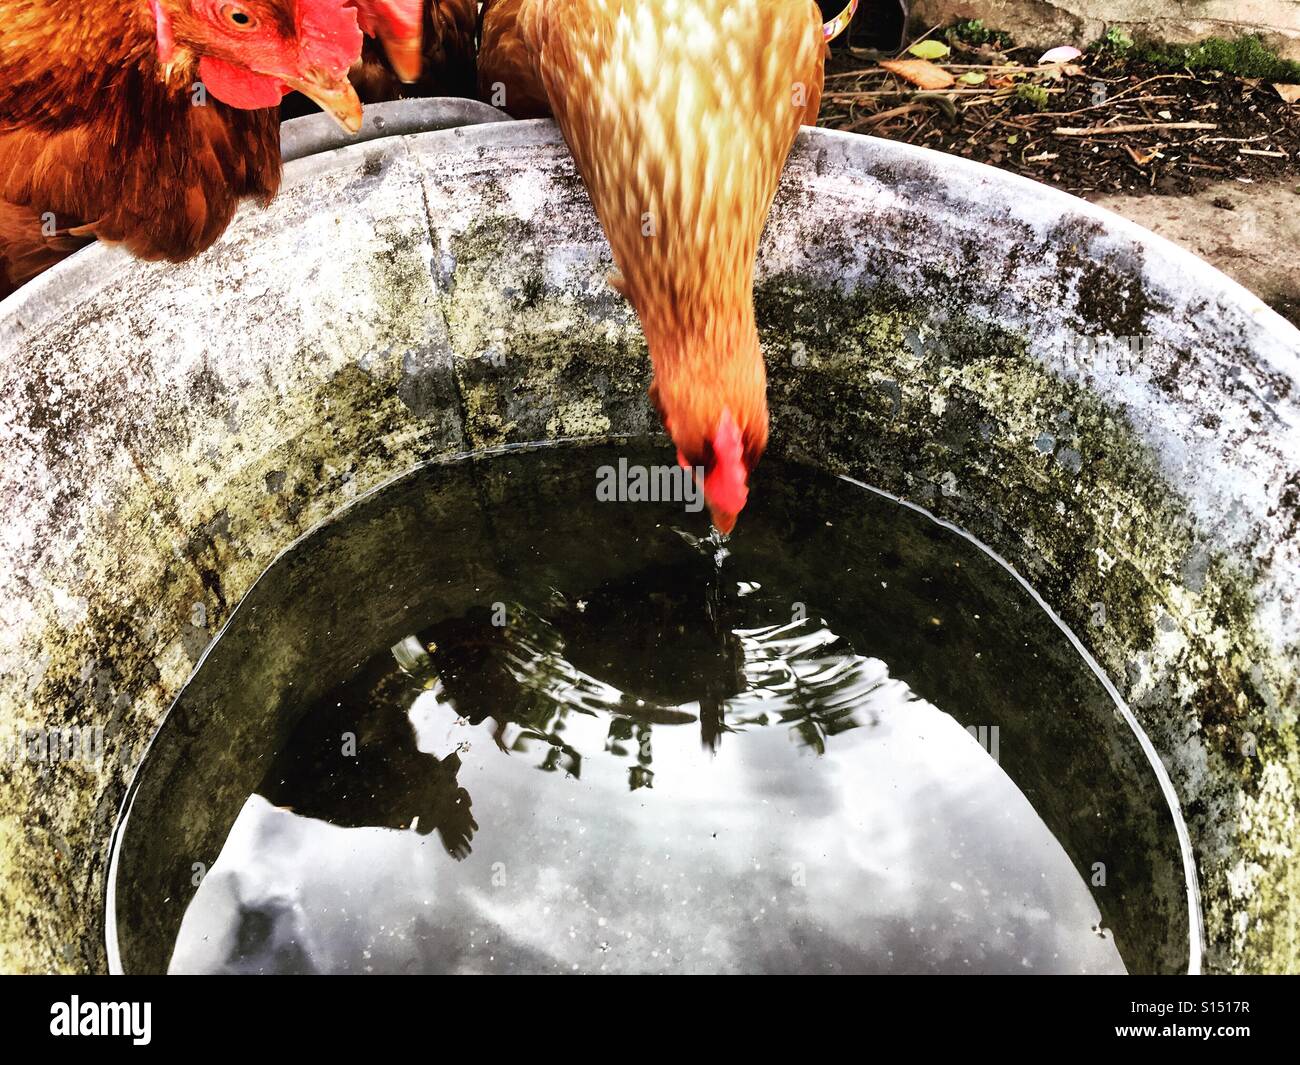 Hühner trinken Wasser aus einem Metall-Eimer Stockfoto